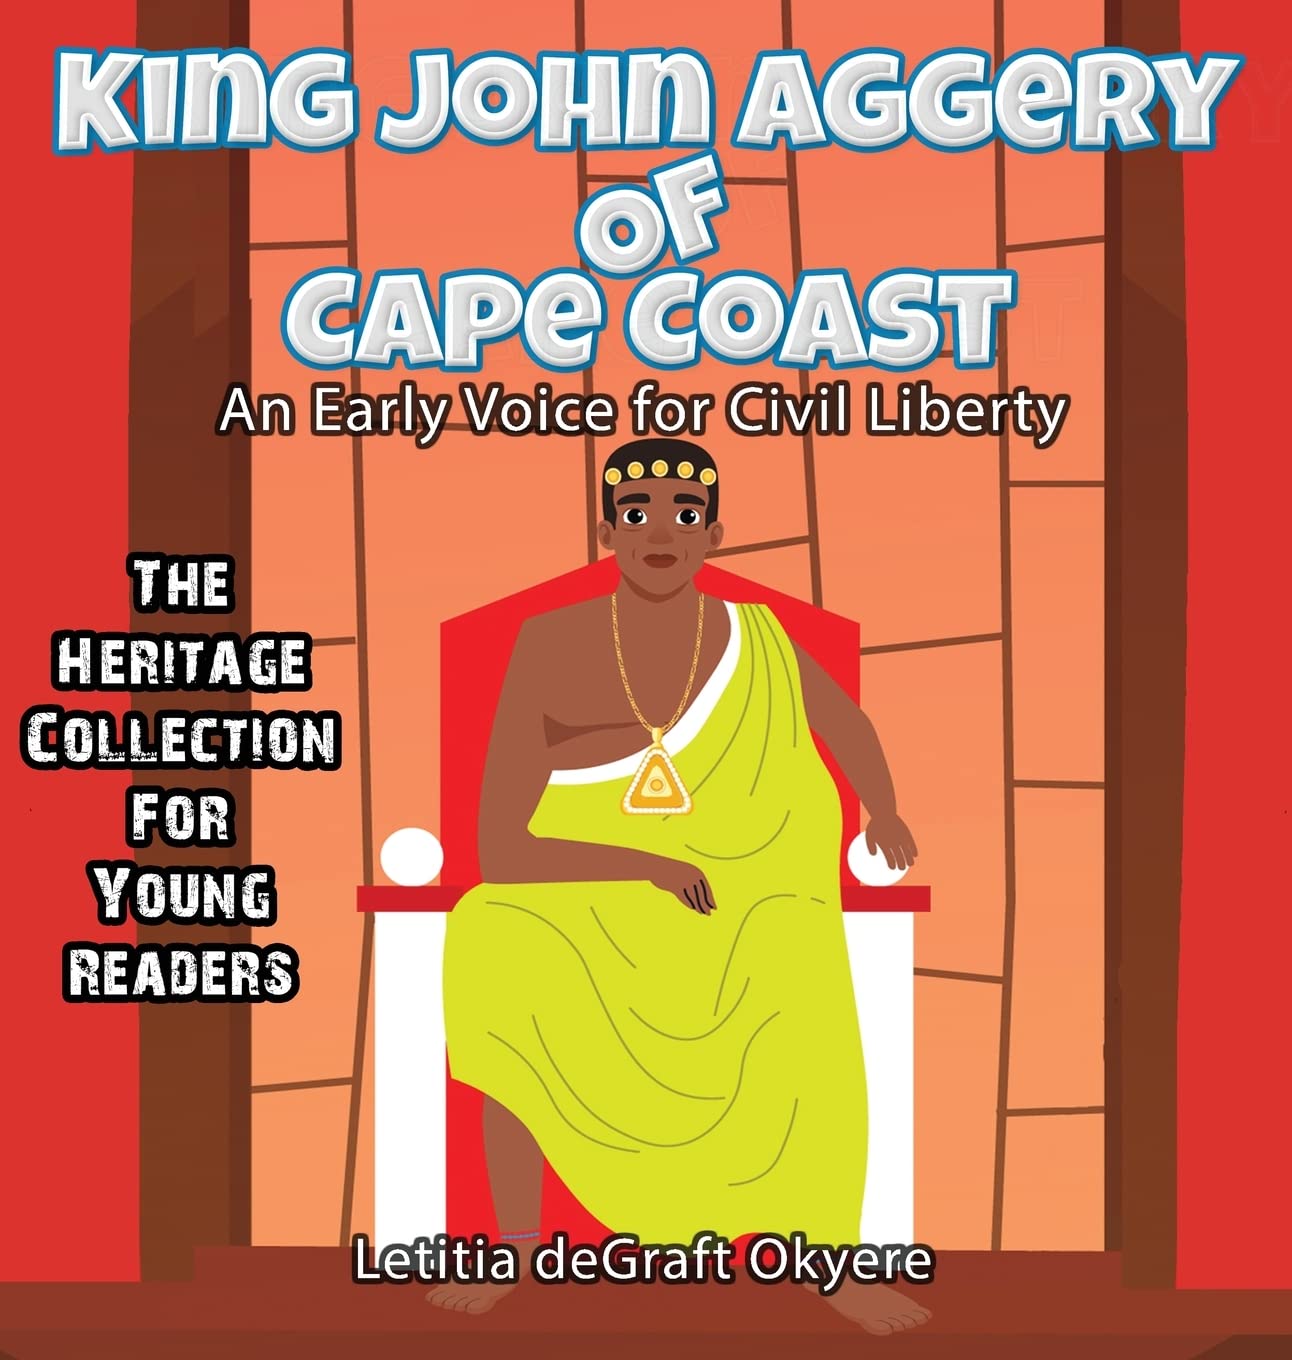 King John Aggery of Cape Coast Book Cover